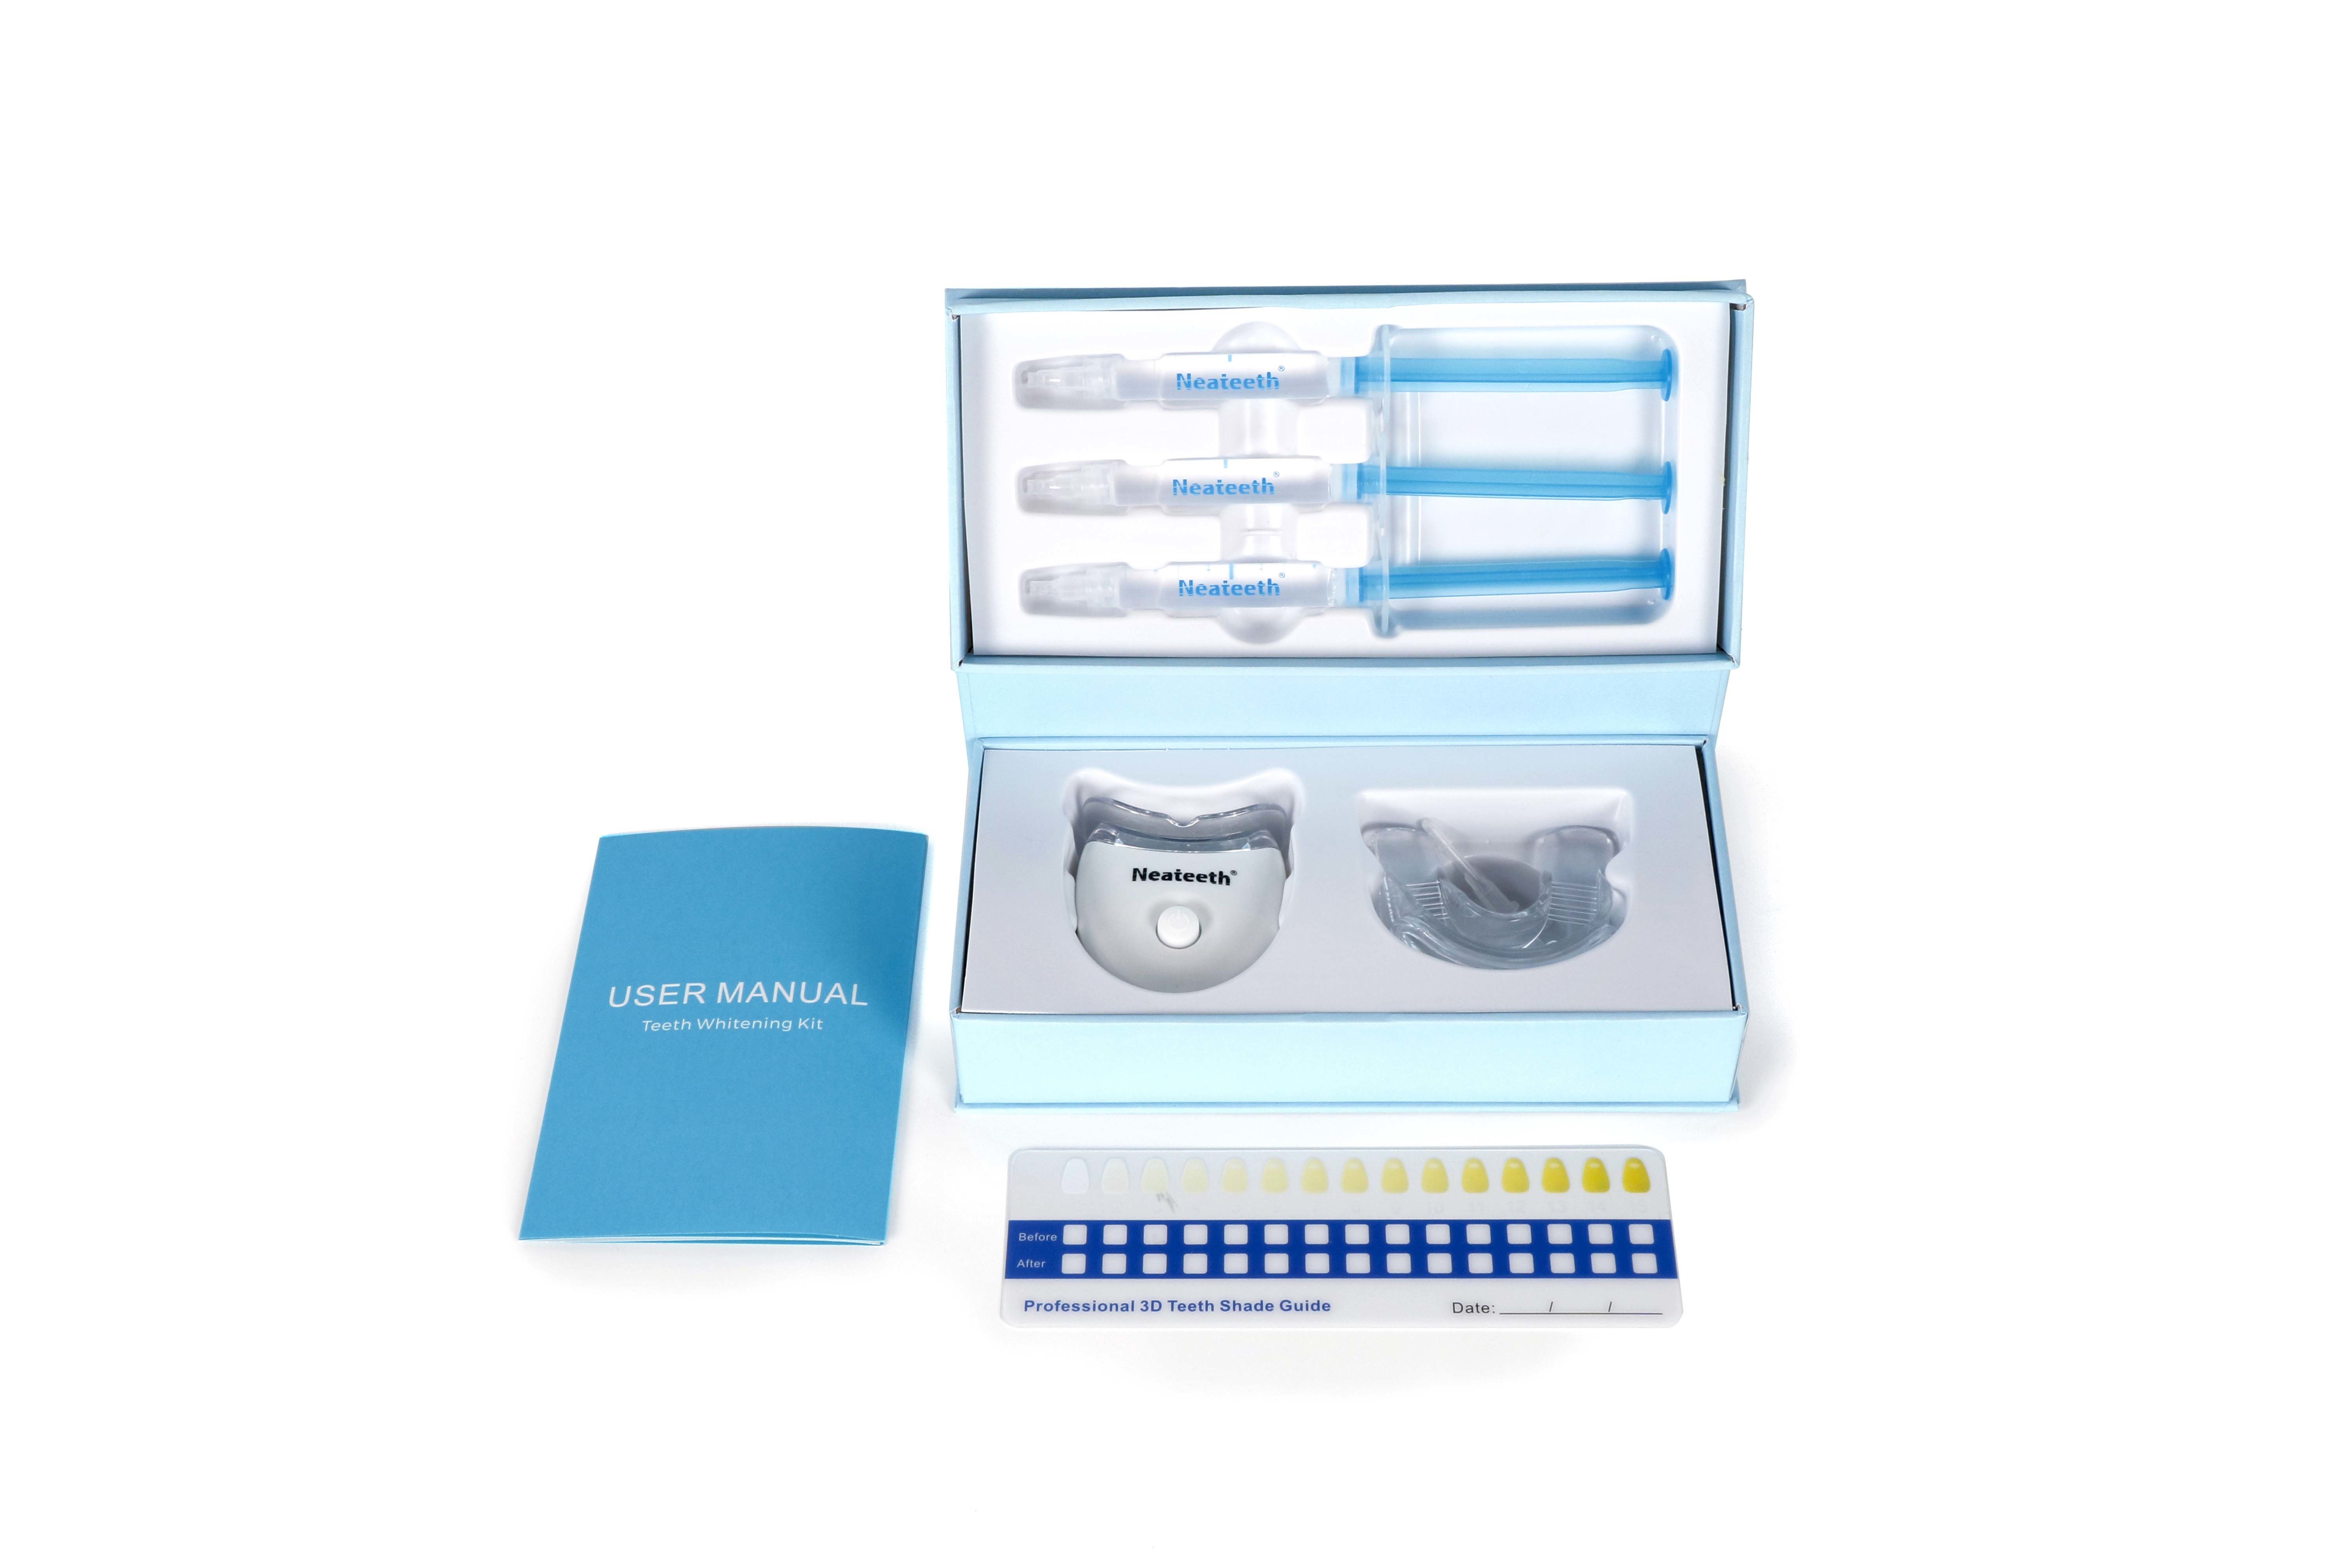 Sistema de blanqueamiento dental Neateeth Mini 5 LED sin sincronización